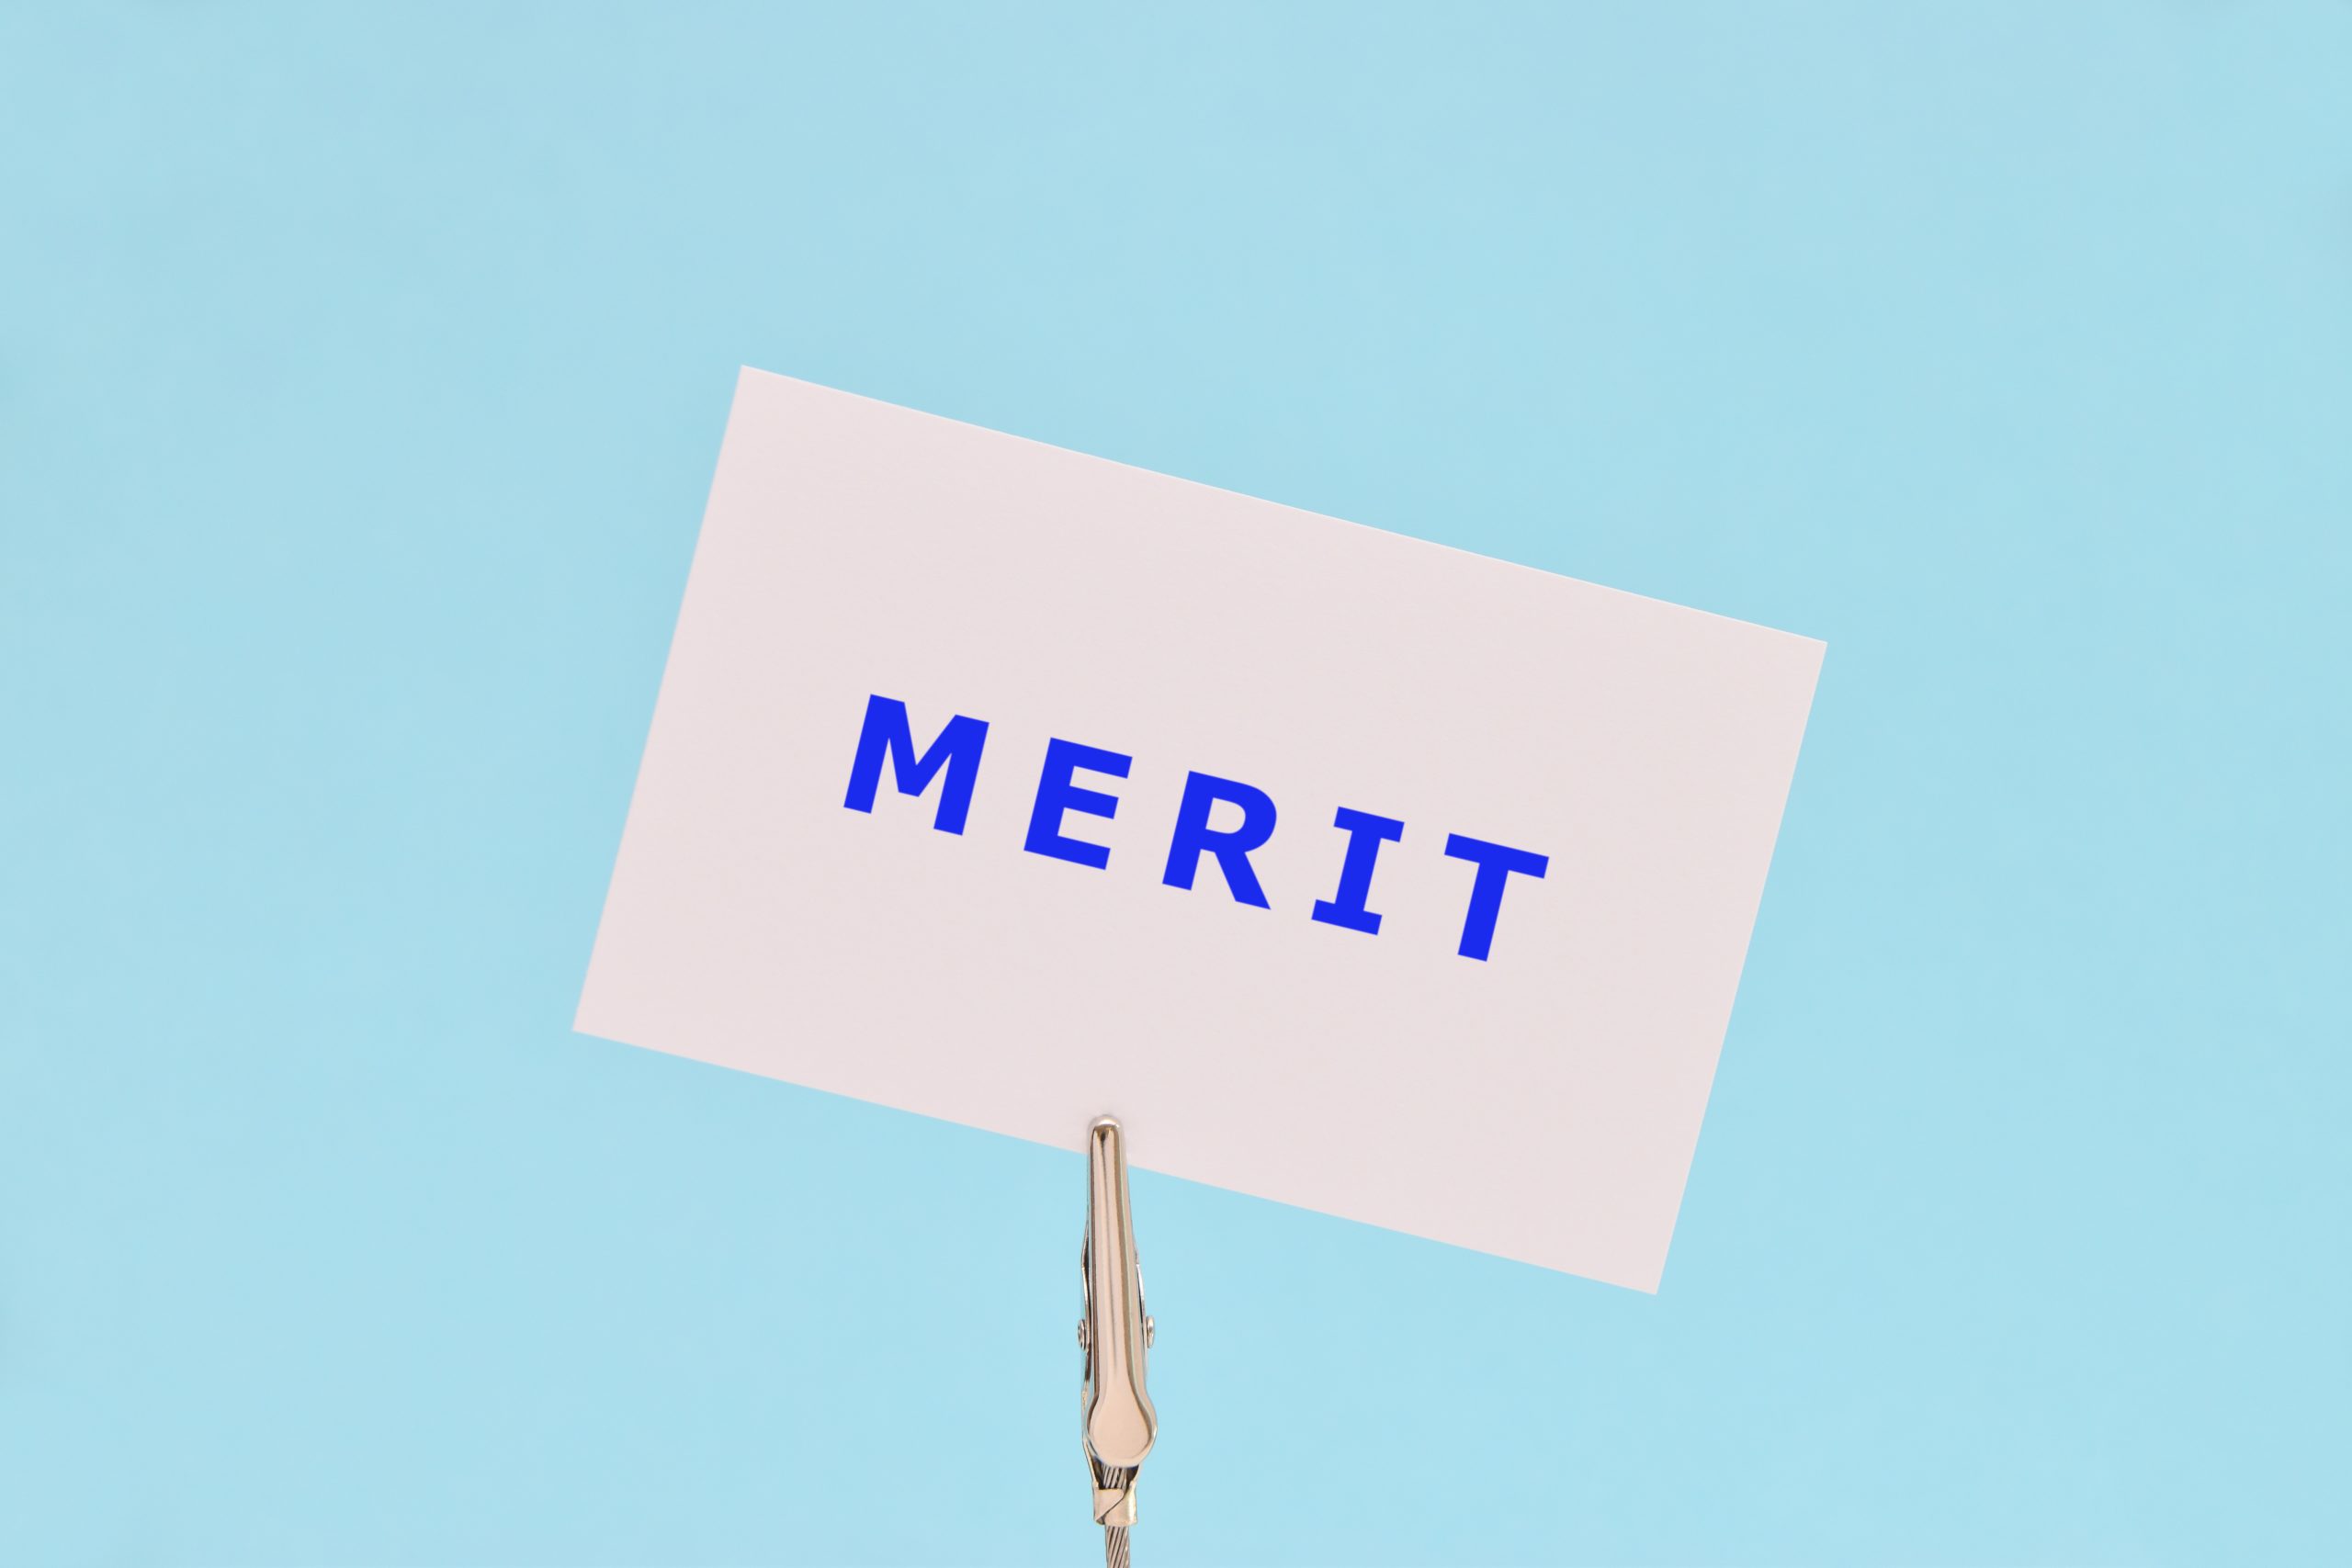 水色の背景に青い字でMERITと書かれた紙のイメージ